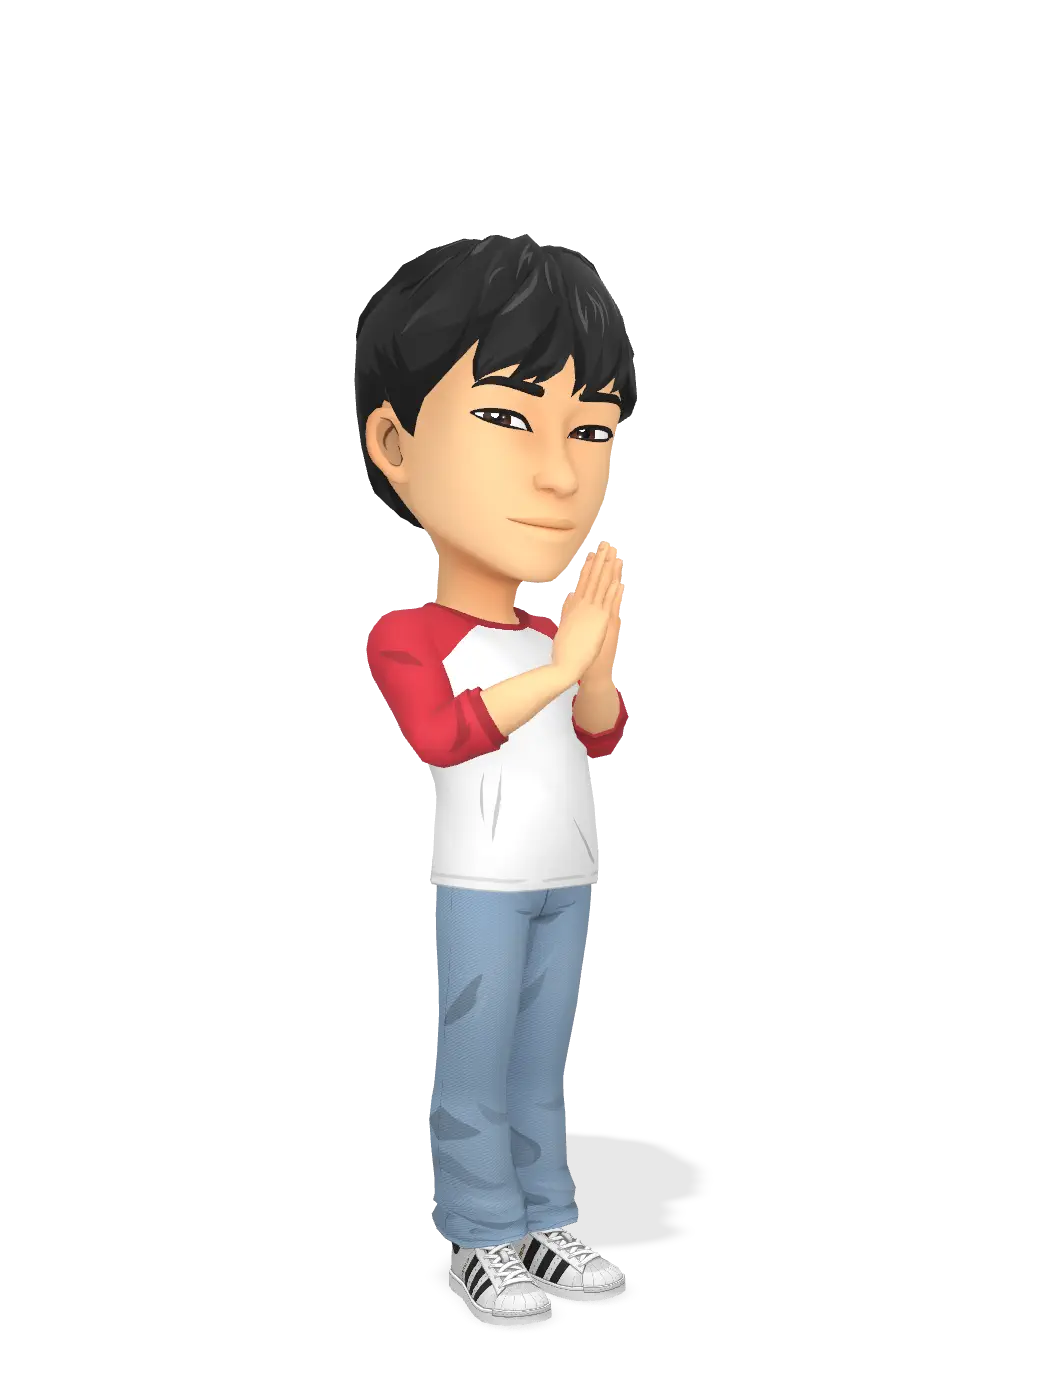 3D Bitmoji for michudzielec avatar